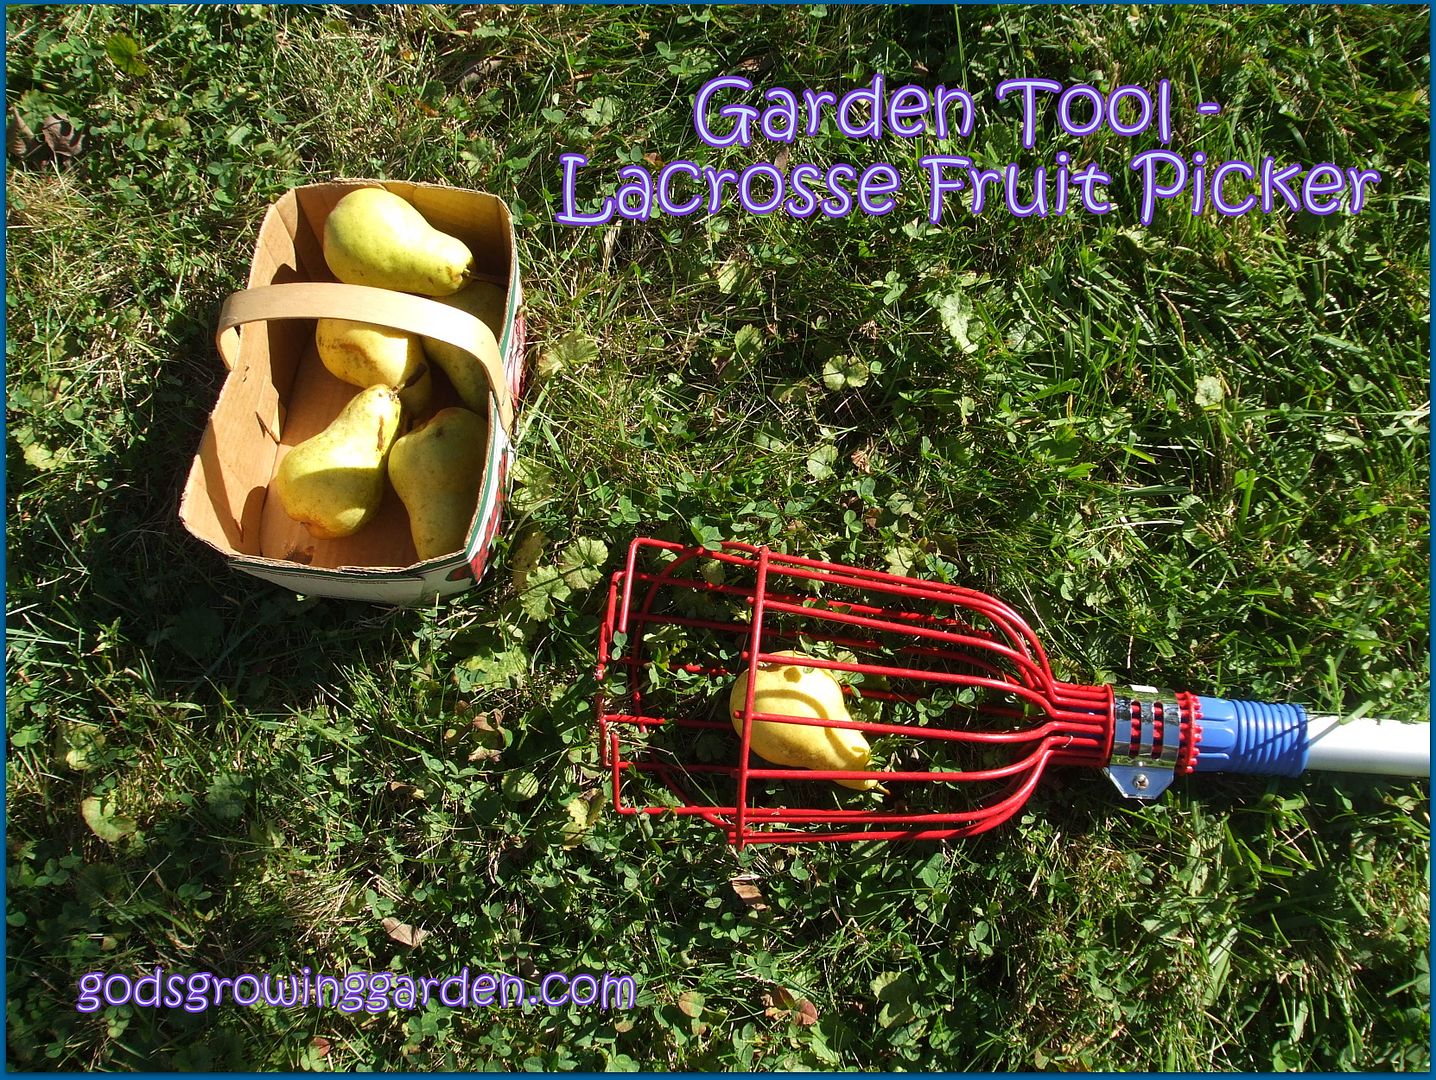 Lacrosse Fruit Picker by Angie Ouellette-Tower for godsgrowinggarden.com photo DSCF0756_zps8e645031.jpg